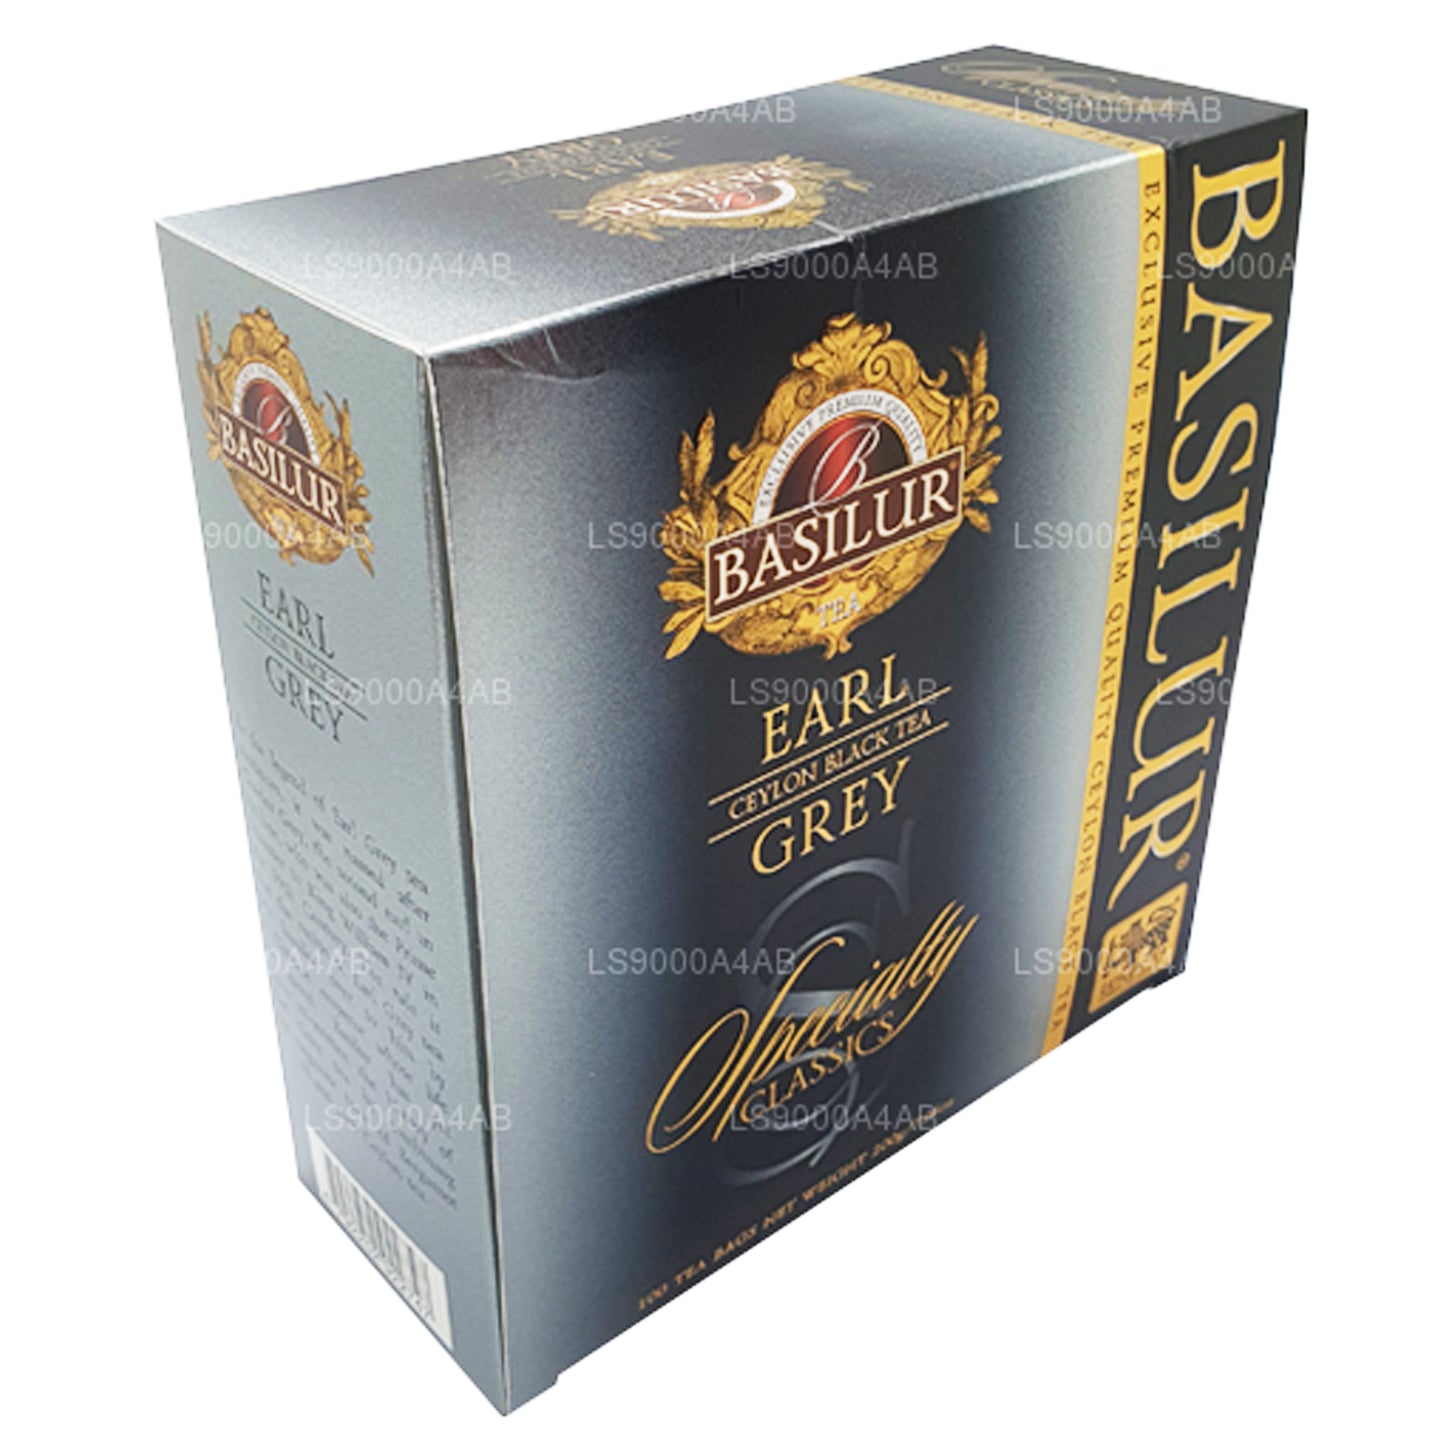 Basilur Speciality Classics Earl Grey Ceylon zwarte thee (200 g) 100 theezakjes